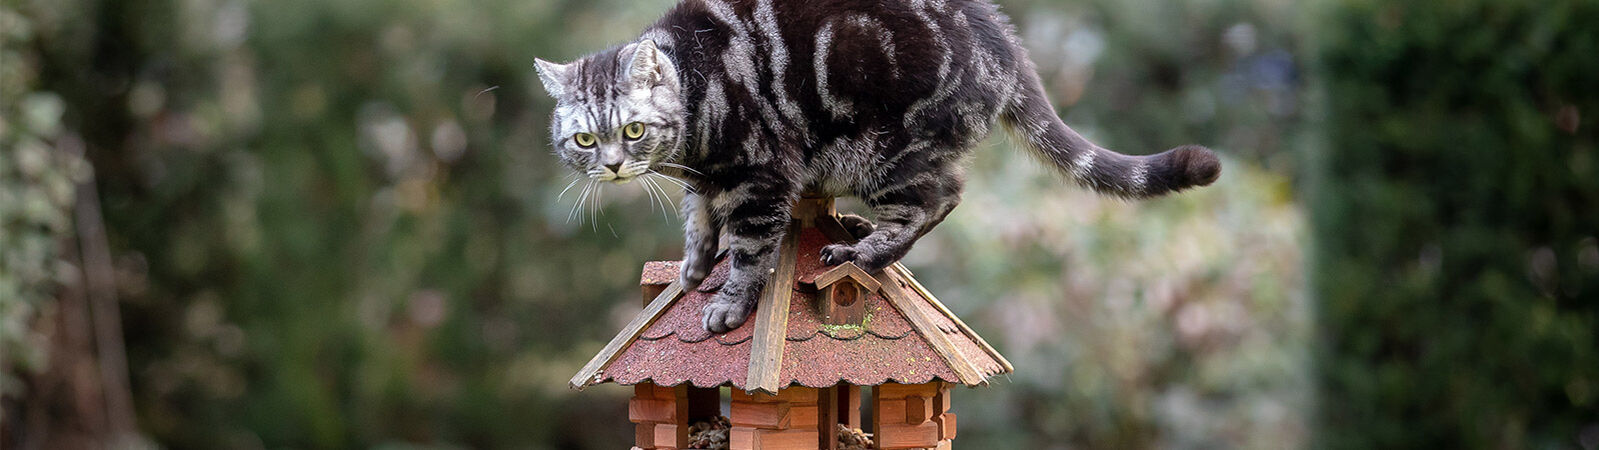 Katze steht auf einem Vogelfutterhäuschen im Garten.